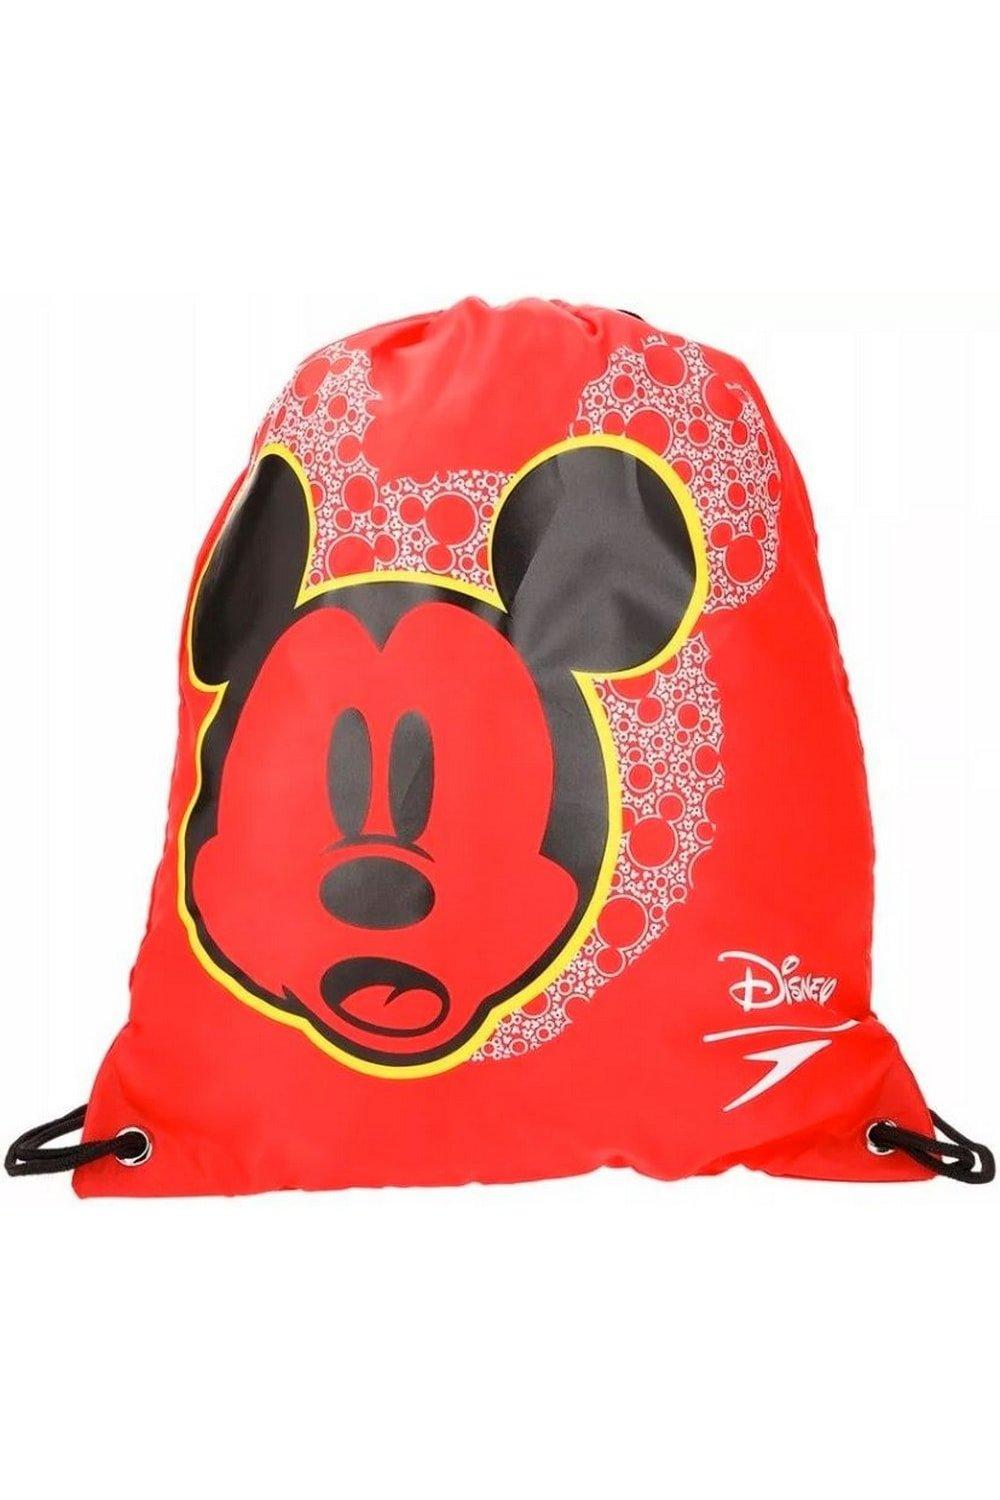 Сумка Mickey Mouse Speedo на шнурке Disney, красный сумка на шнурке mickey mouse